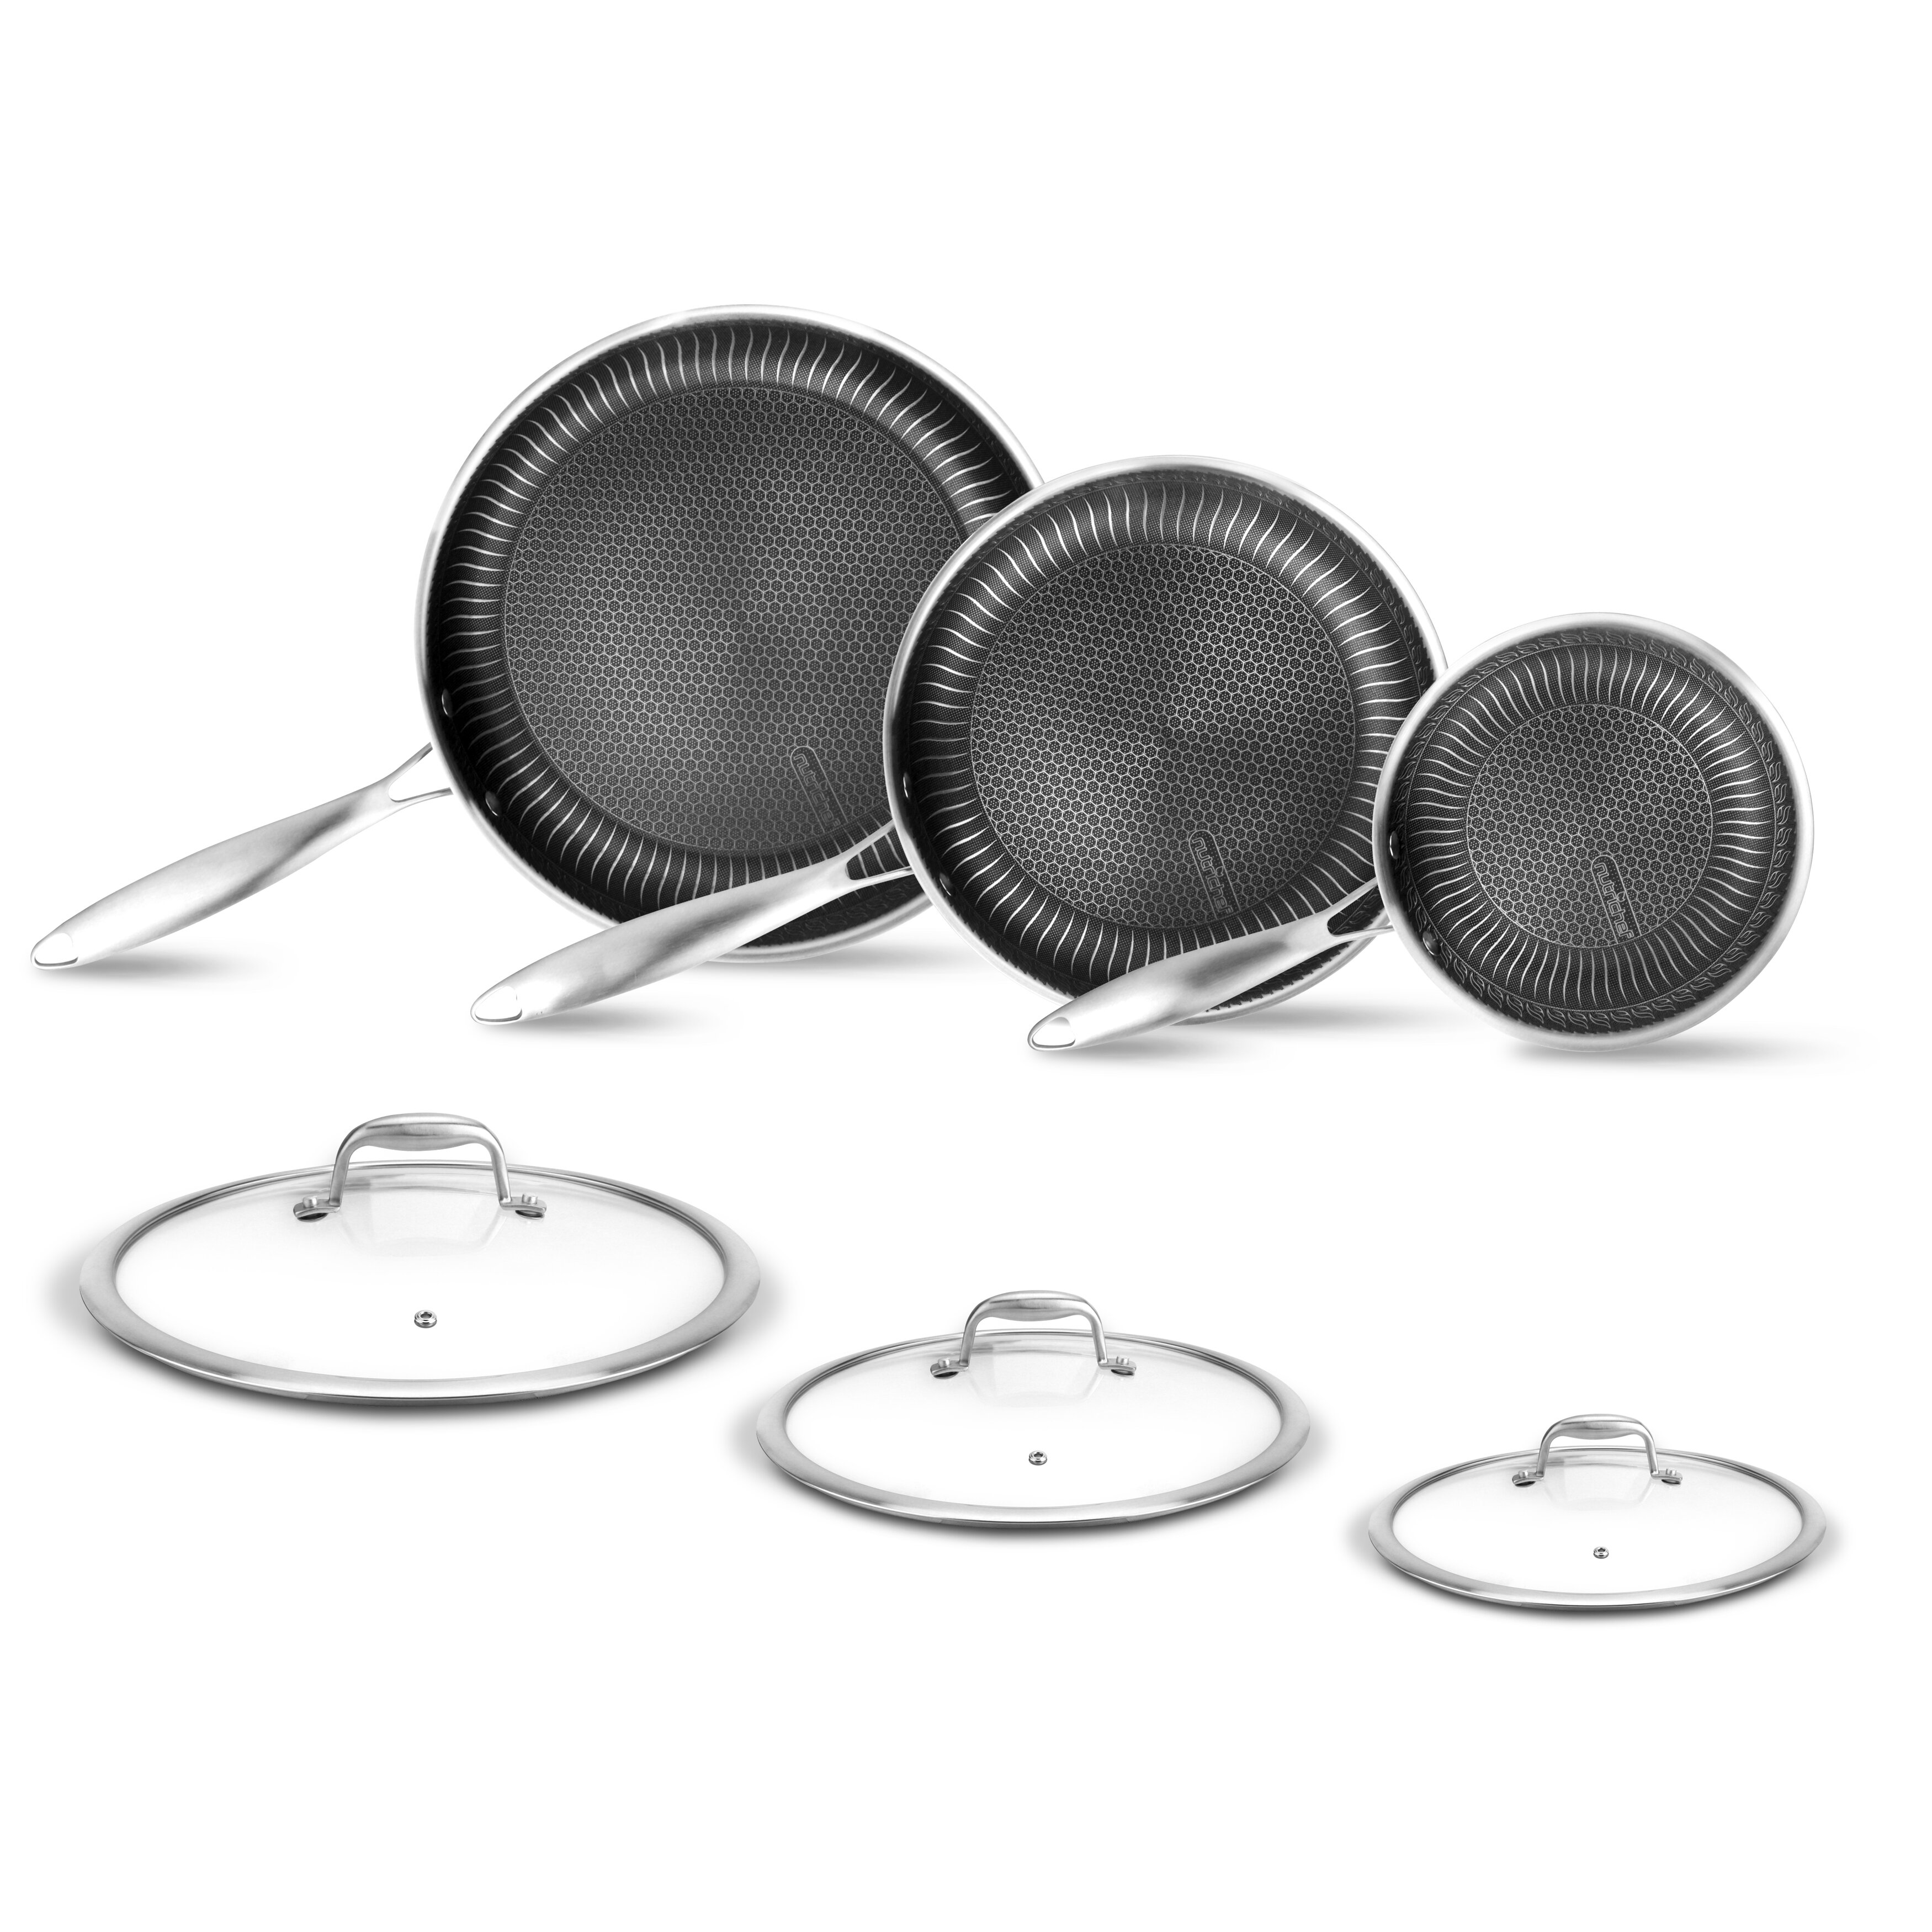 https://assets.wfcdn.com/im/32594650/compr-r85/1335/133562747/6-piece-non-stick-aluminum-cookware-set.jpg